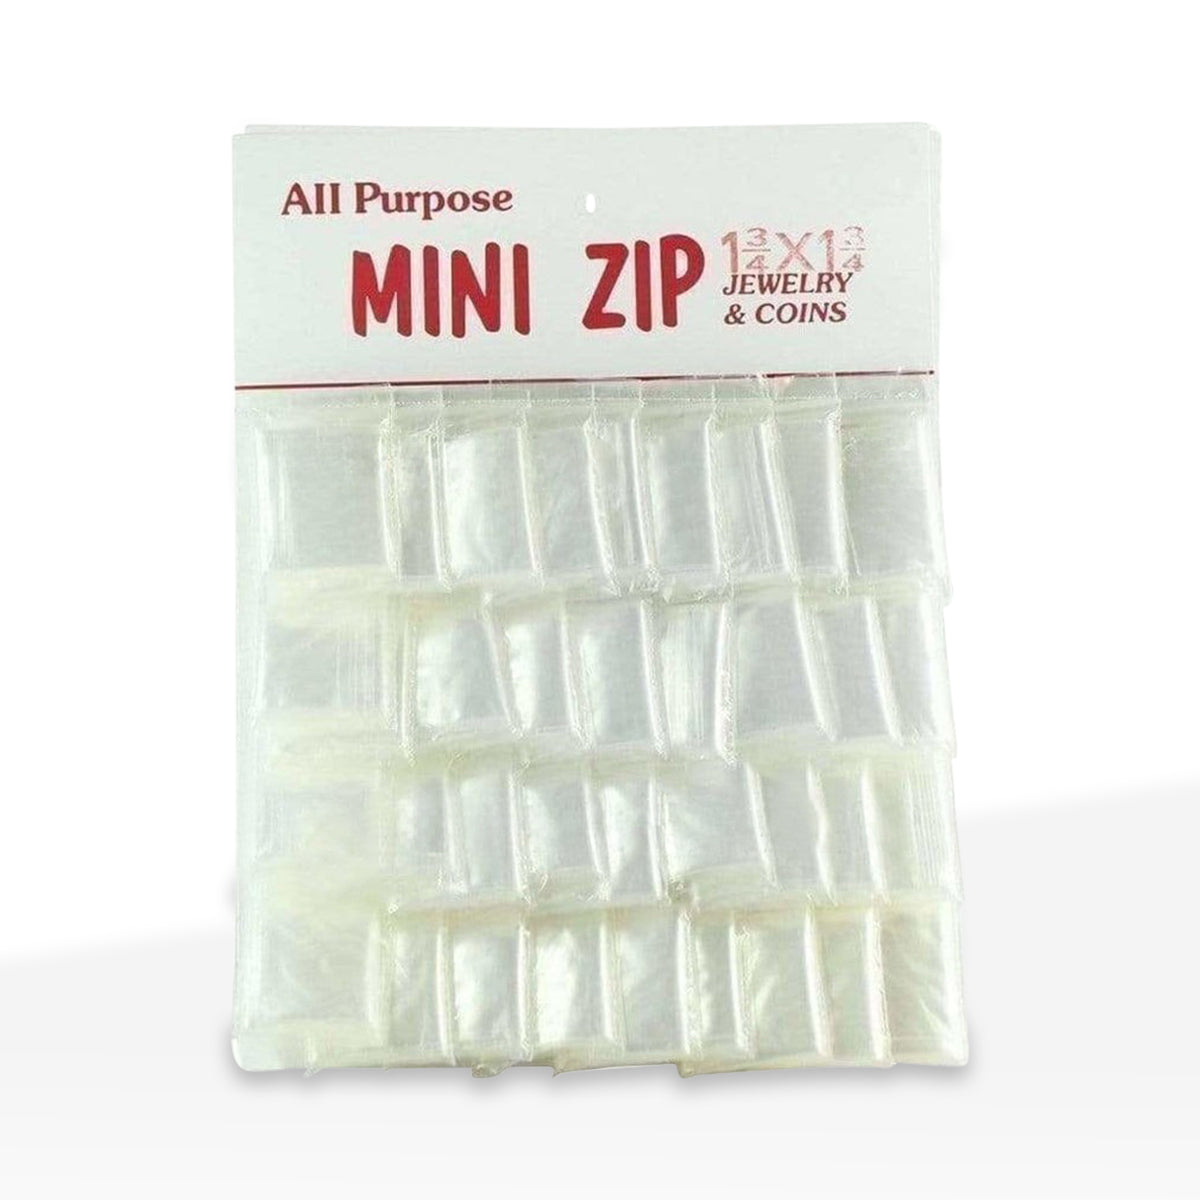 Zip Lock | Plastic Zip Lock Baggies | 1.75" x 1.75" - Clear - 36 Count